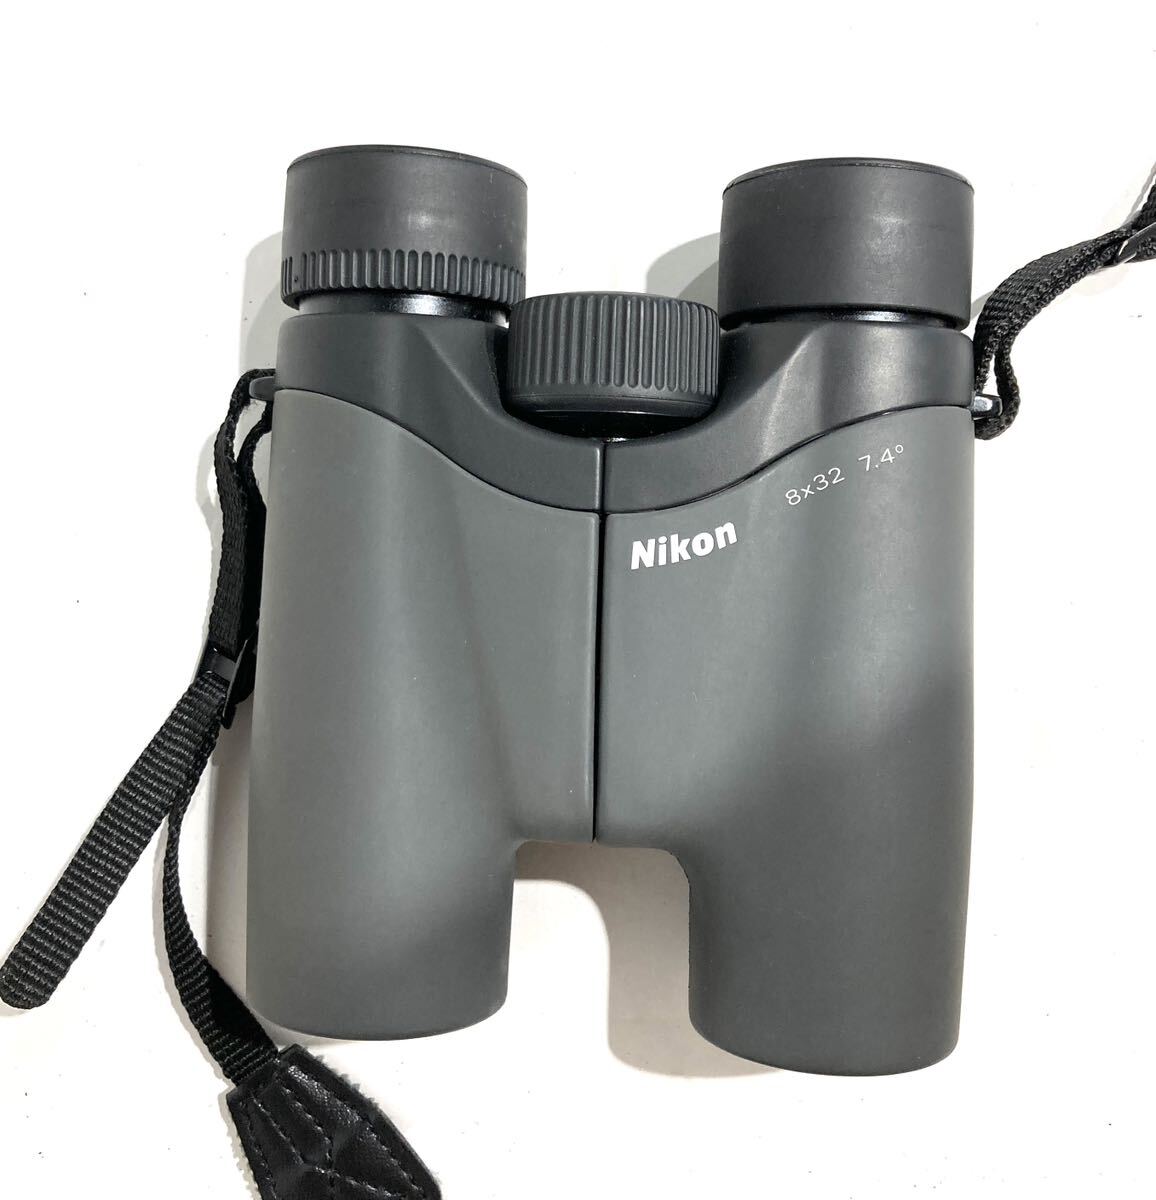 bk-824 Nikon Nikon binoculars 8×32 7.4° case attaching (Y259-3)